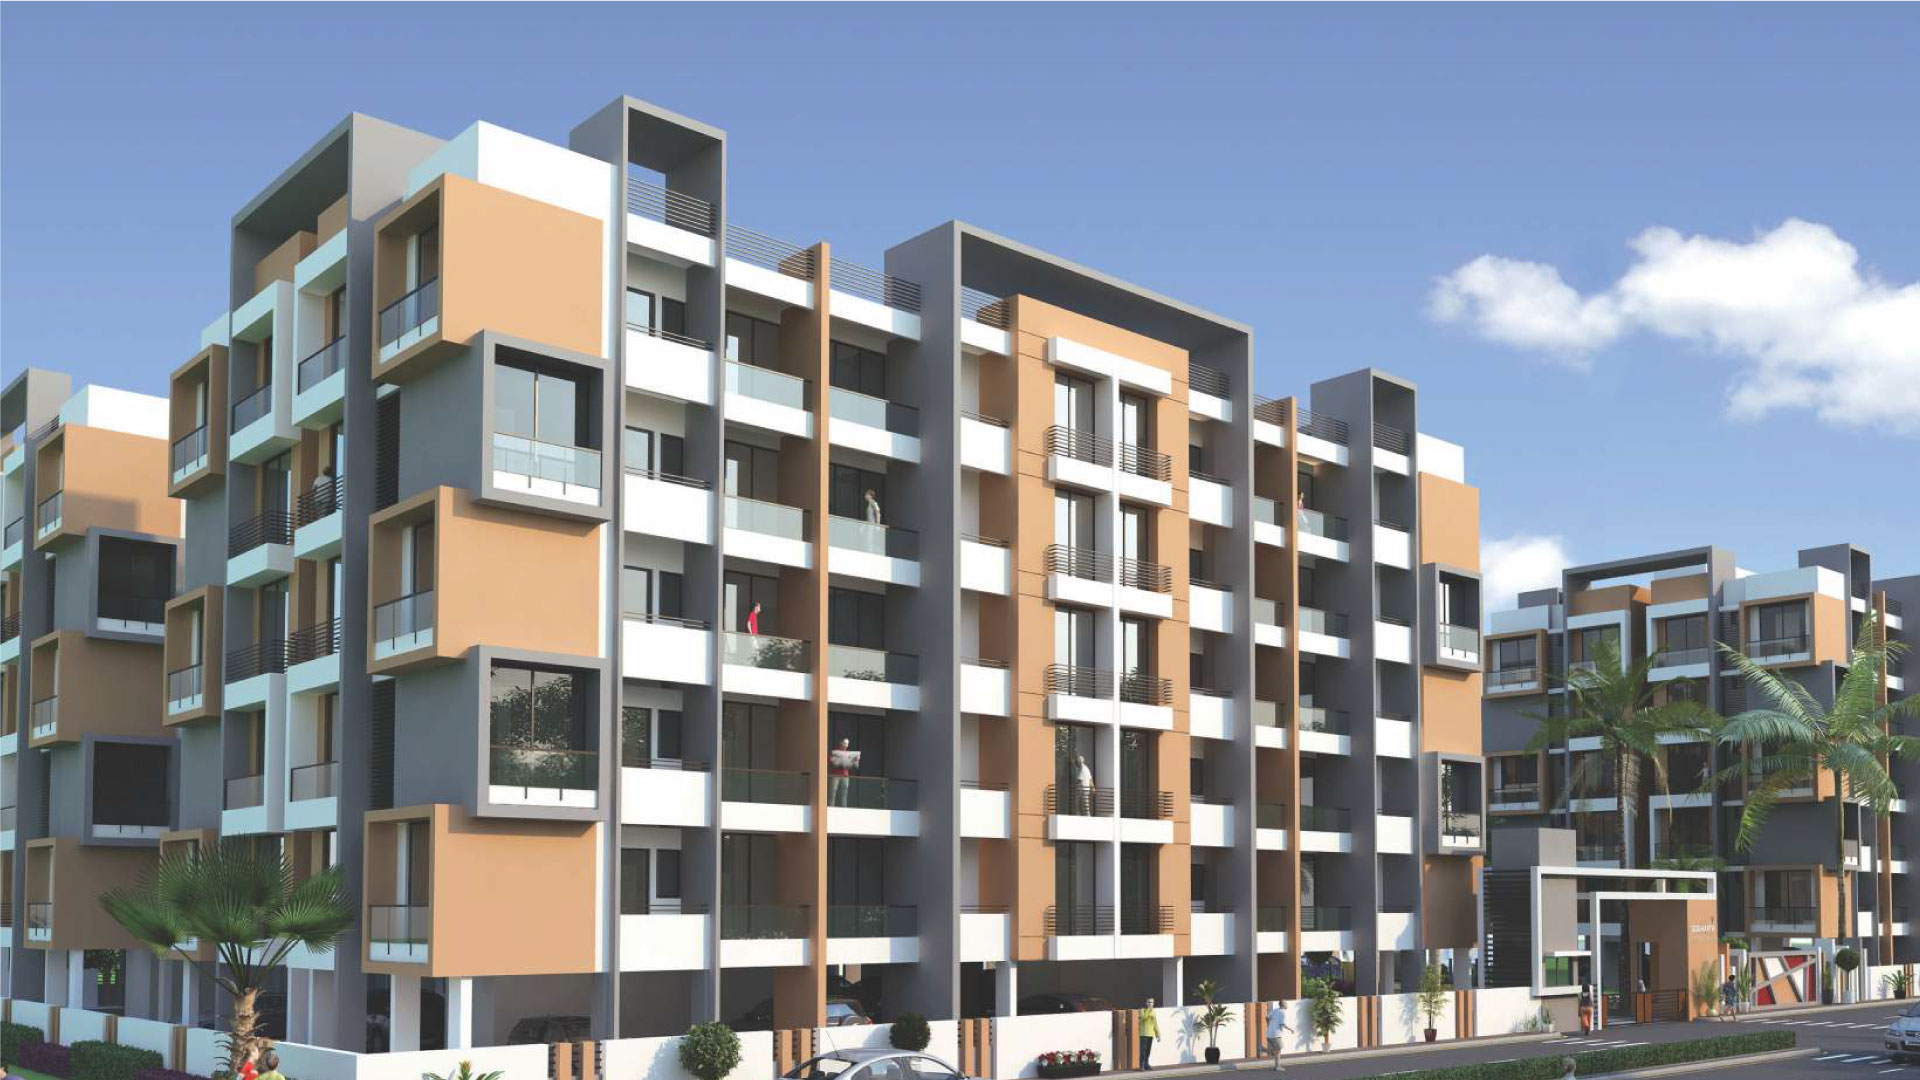 2  3 BHK Flats in Gandhinagar  Vavol New Projects - Gujarat - Gandhinagar ID1515612